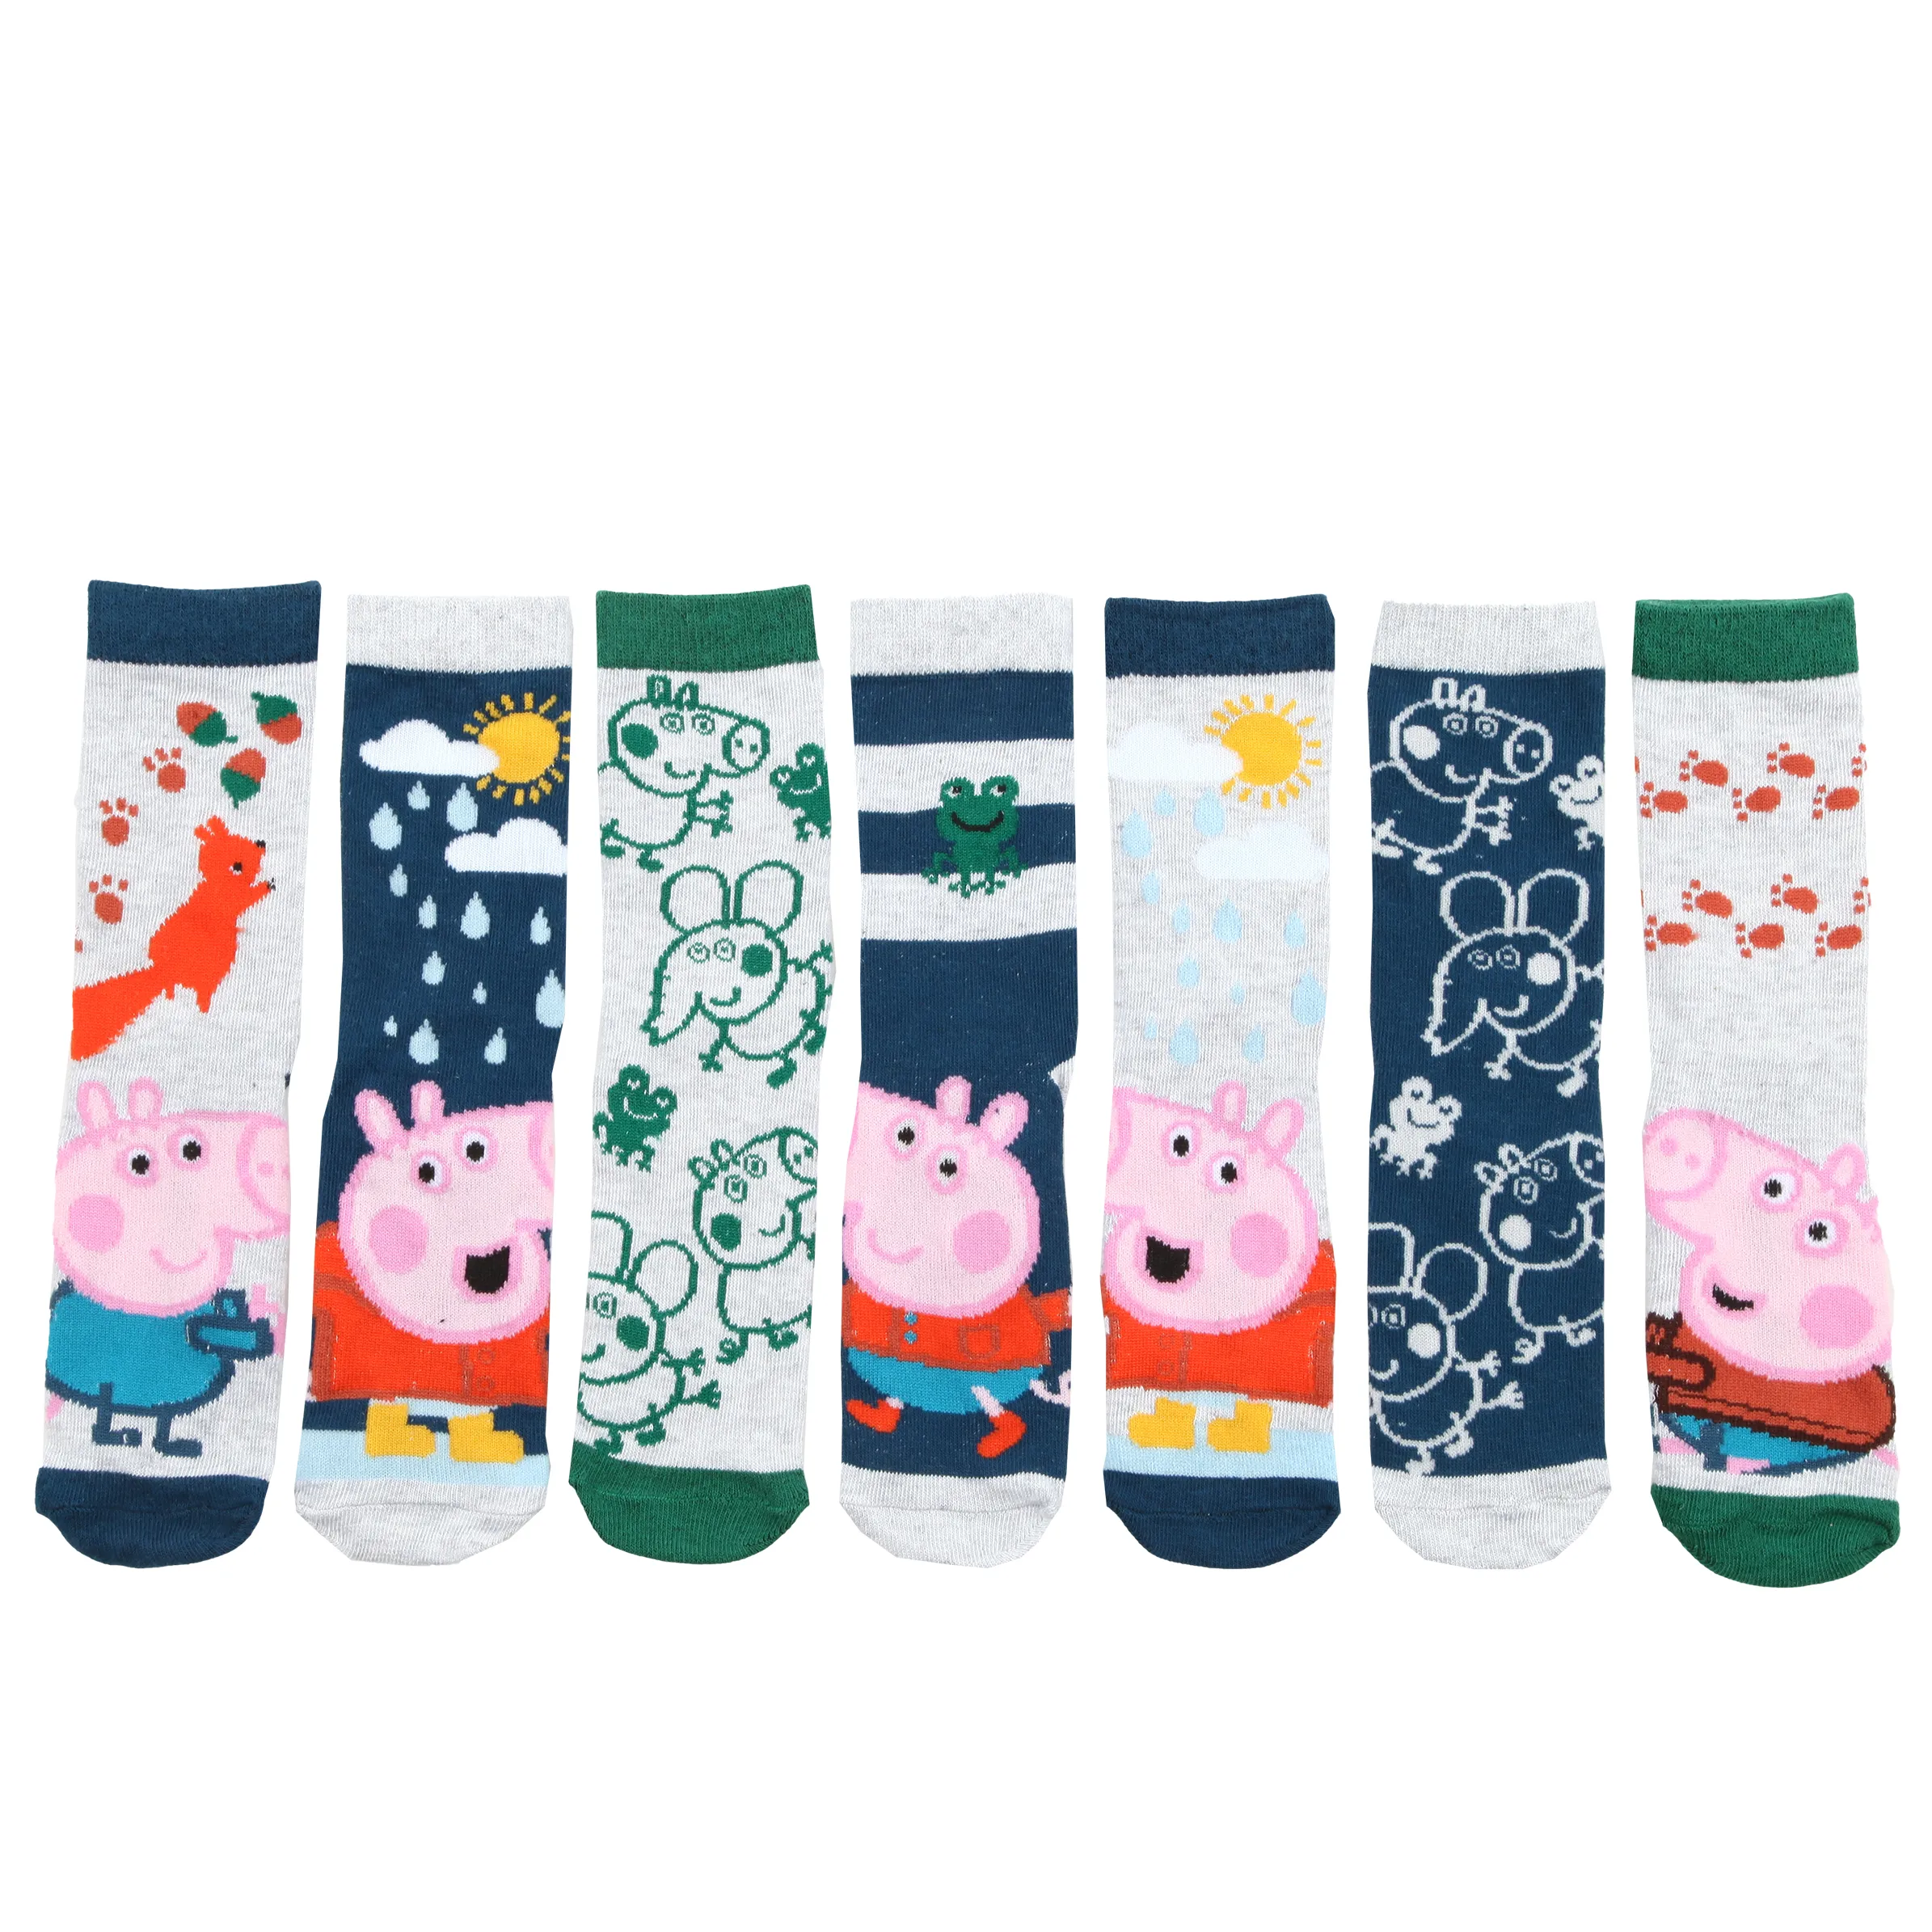 Peppa Pig KJ Socken 7er Pack Peppa Pig Bunt 886116 BLAU 2